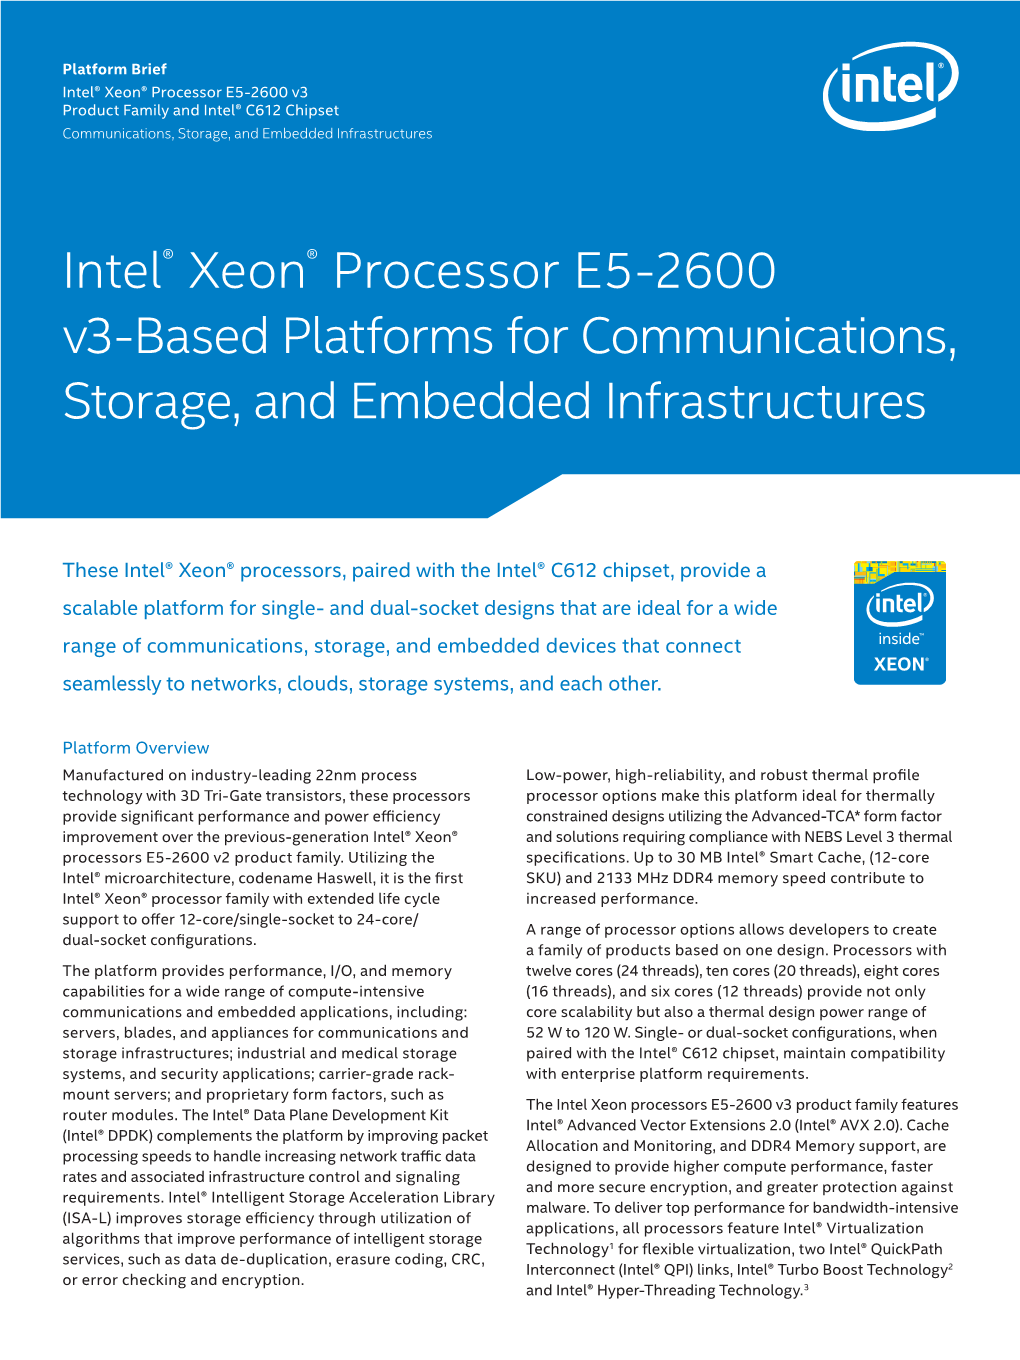 Intel® Xeon® Processor E5-2600 V3 and Intel® C612 Chipset Brief